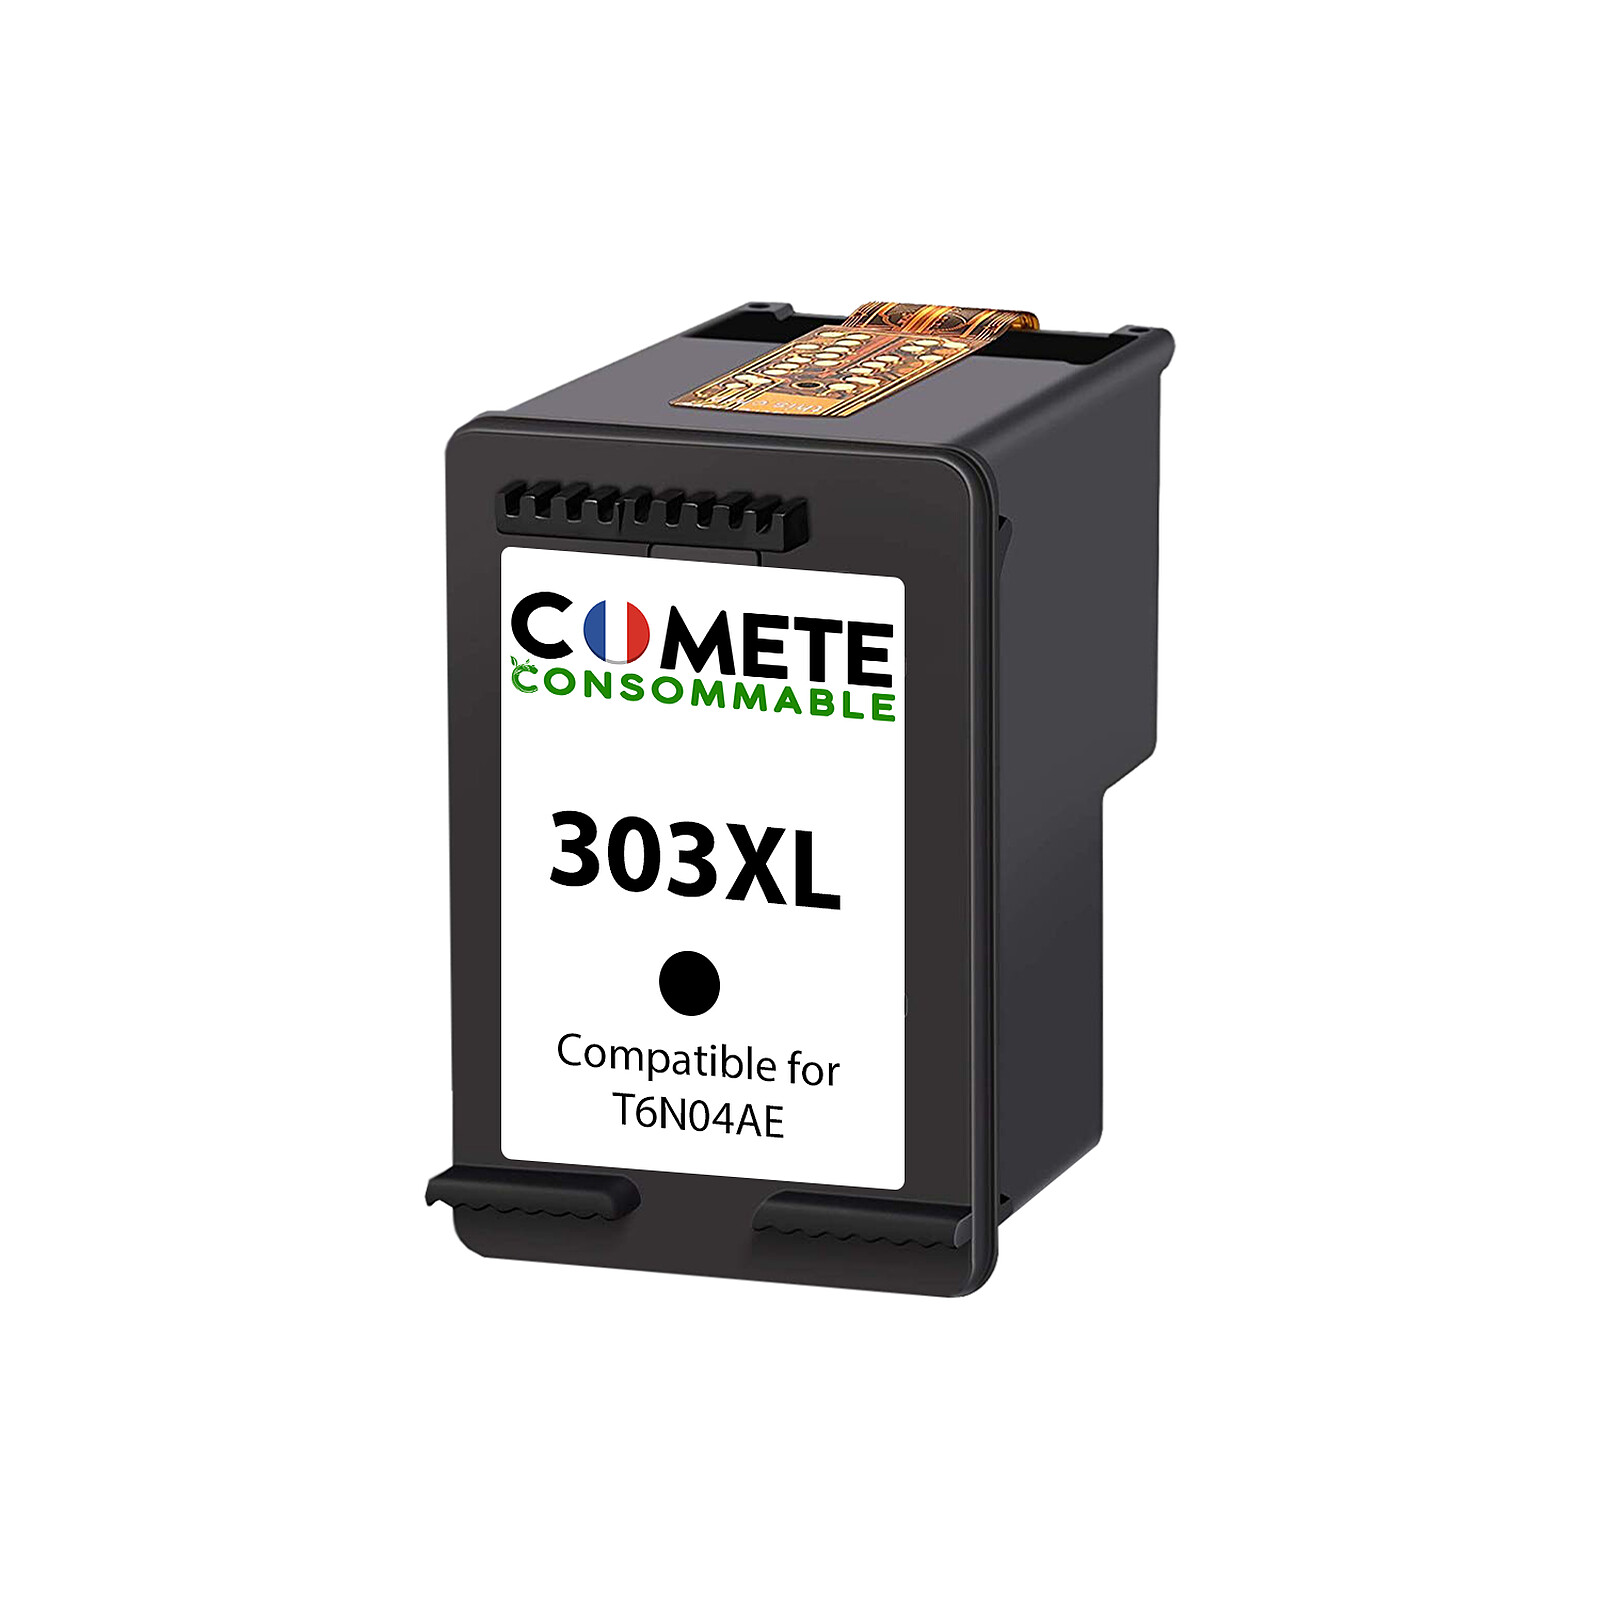 COMETE - 303XL - 1 Cartouche d'Encre Compatible pour HP 303 XL